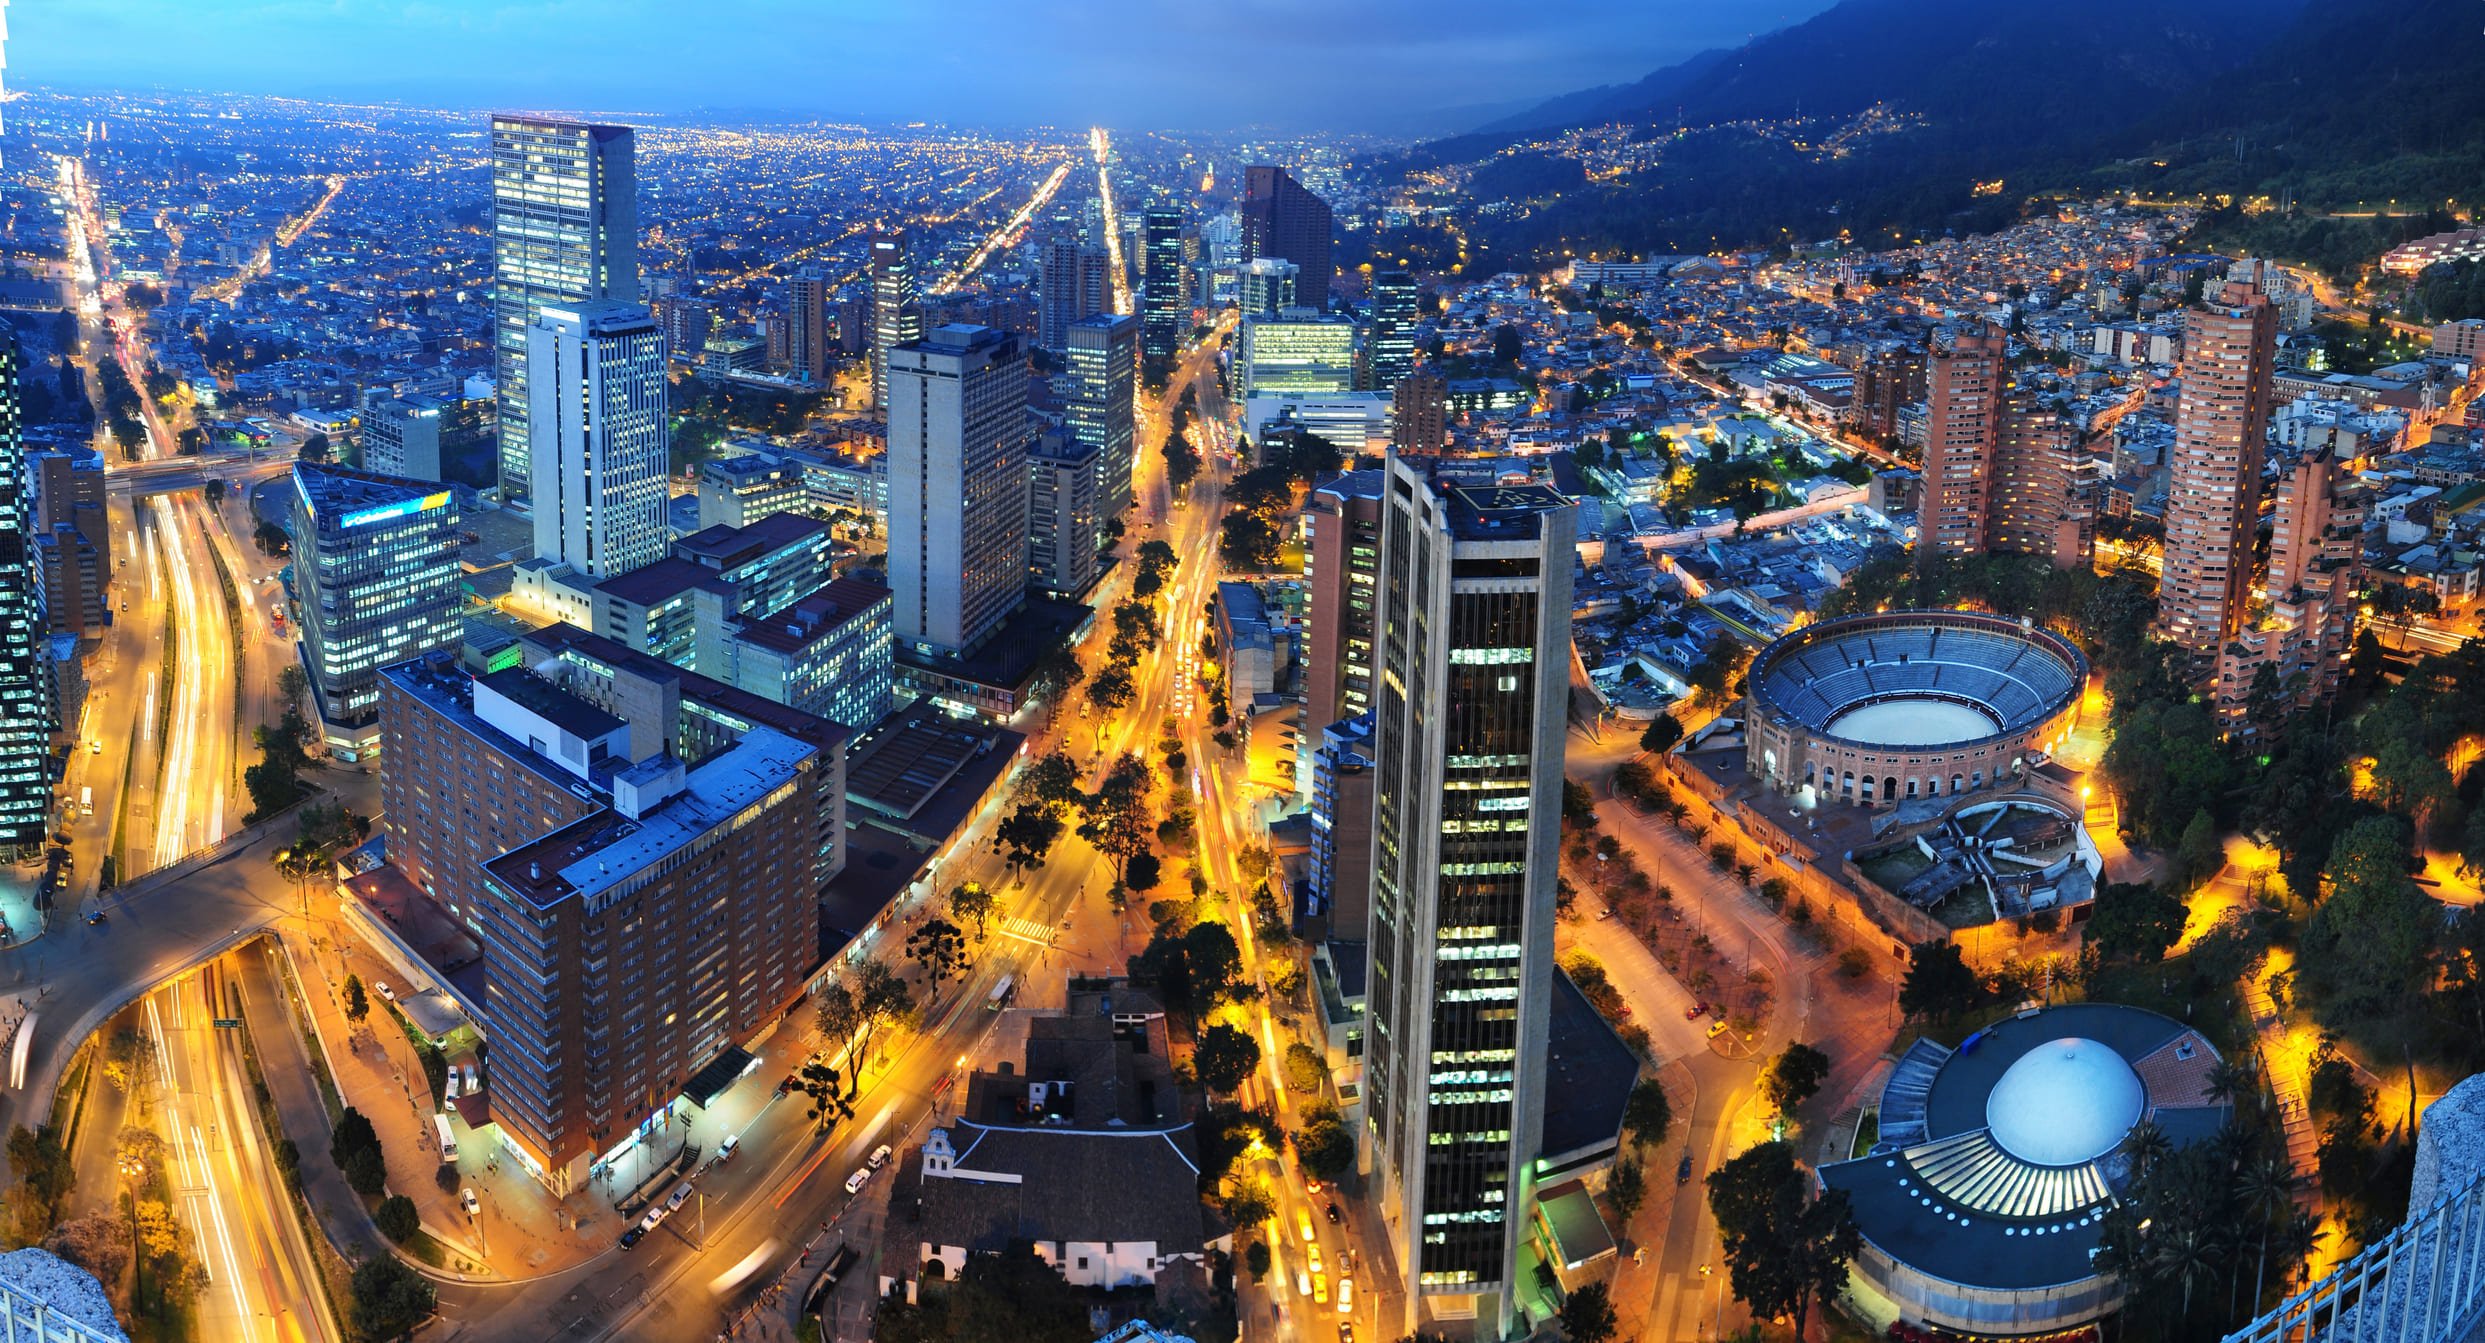 Centro de la ciudad - El centro de Bogotá-Bogotá de noche